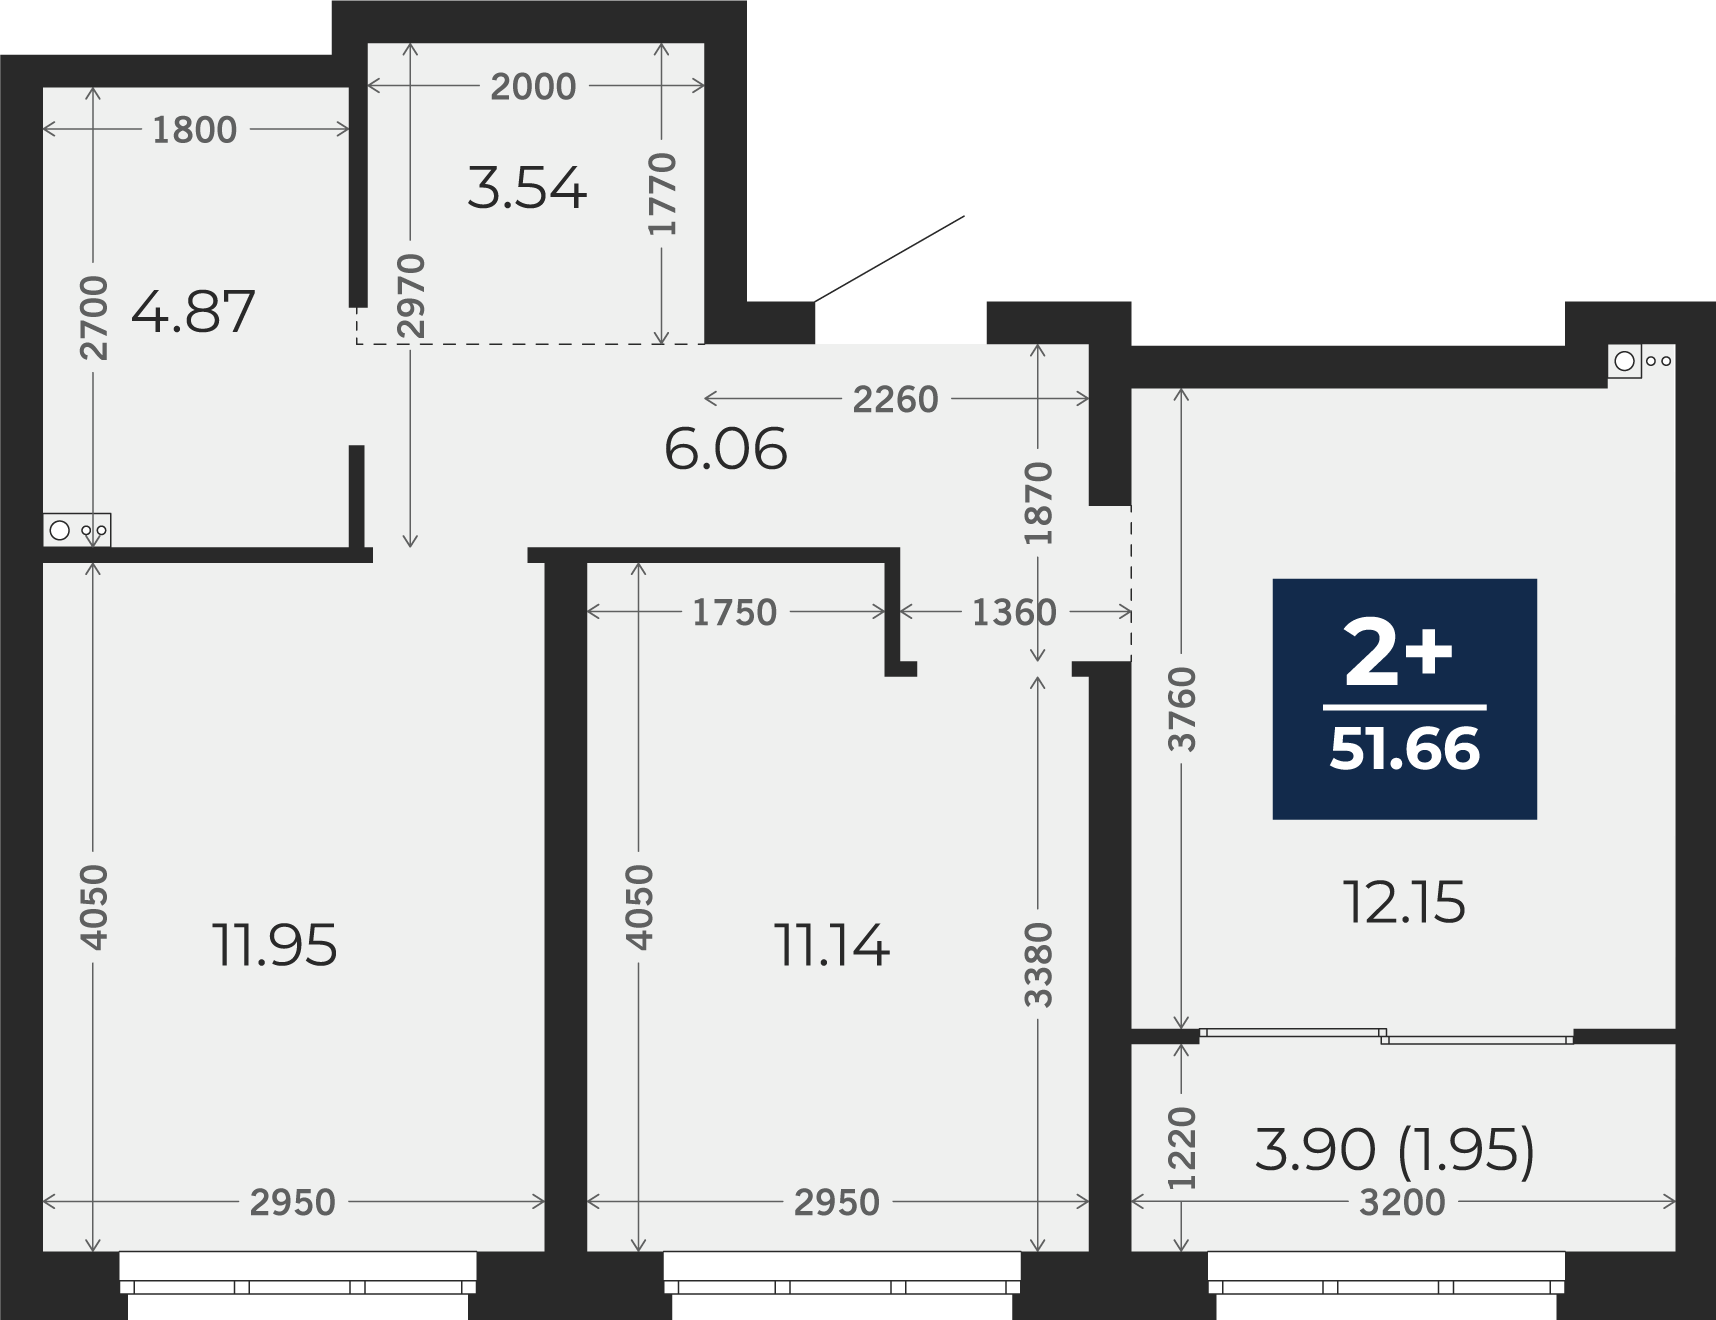 Квартира № 4, 2-комнатная, 51.66 кв. м, 2 этаж